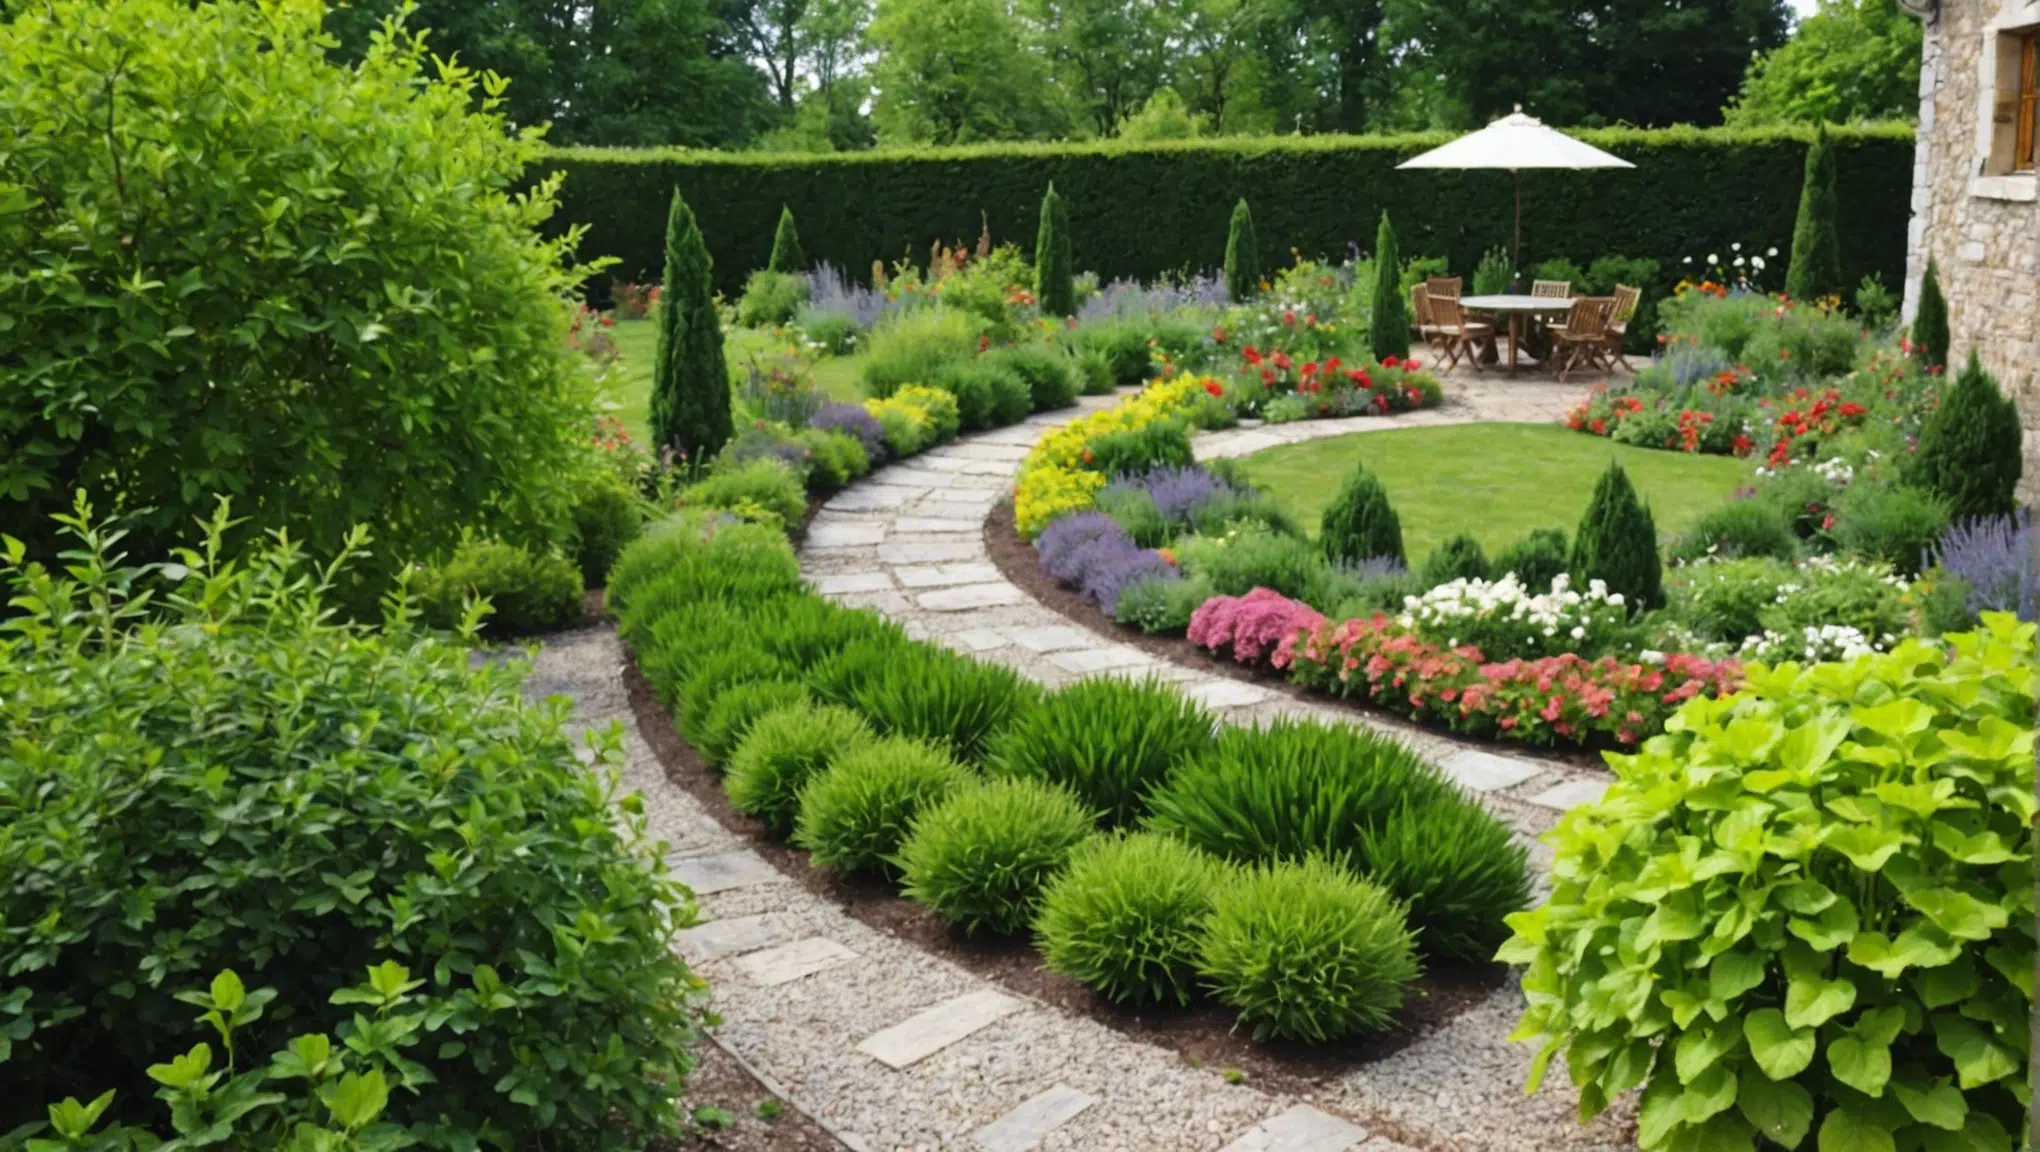 découvrez nos conseils et astuces pour concevoir un magnifique jardin de rocaille. apprenez comment aménager votre espace extérieur avec des plantes adaptées et des décorations harmonieuses.